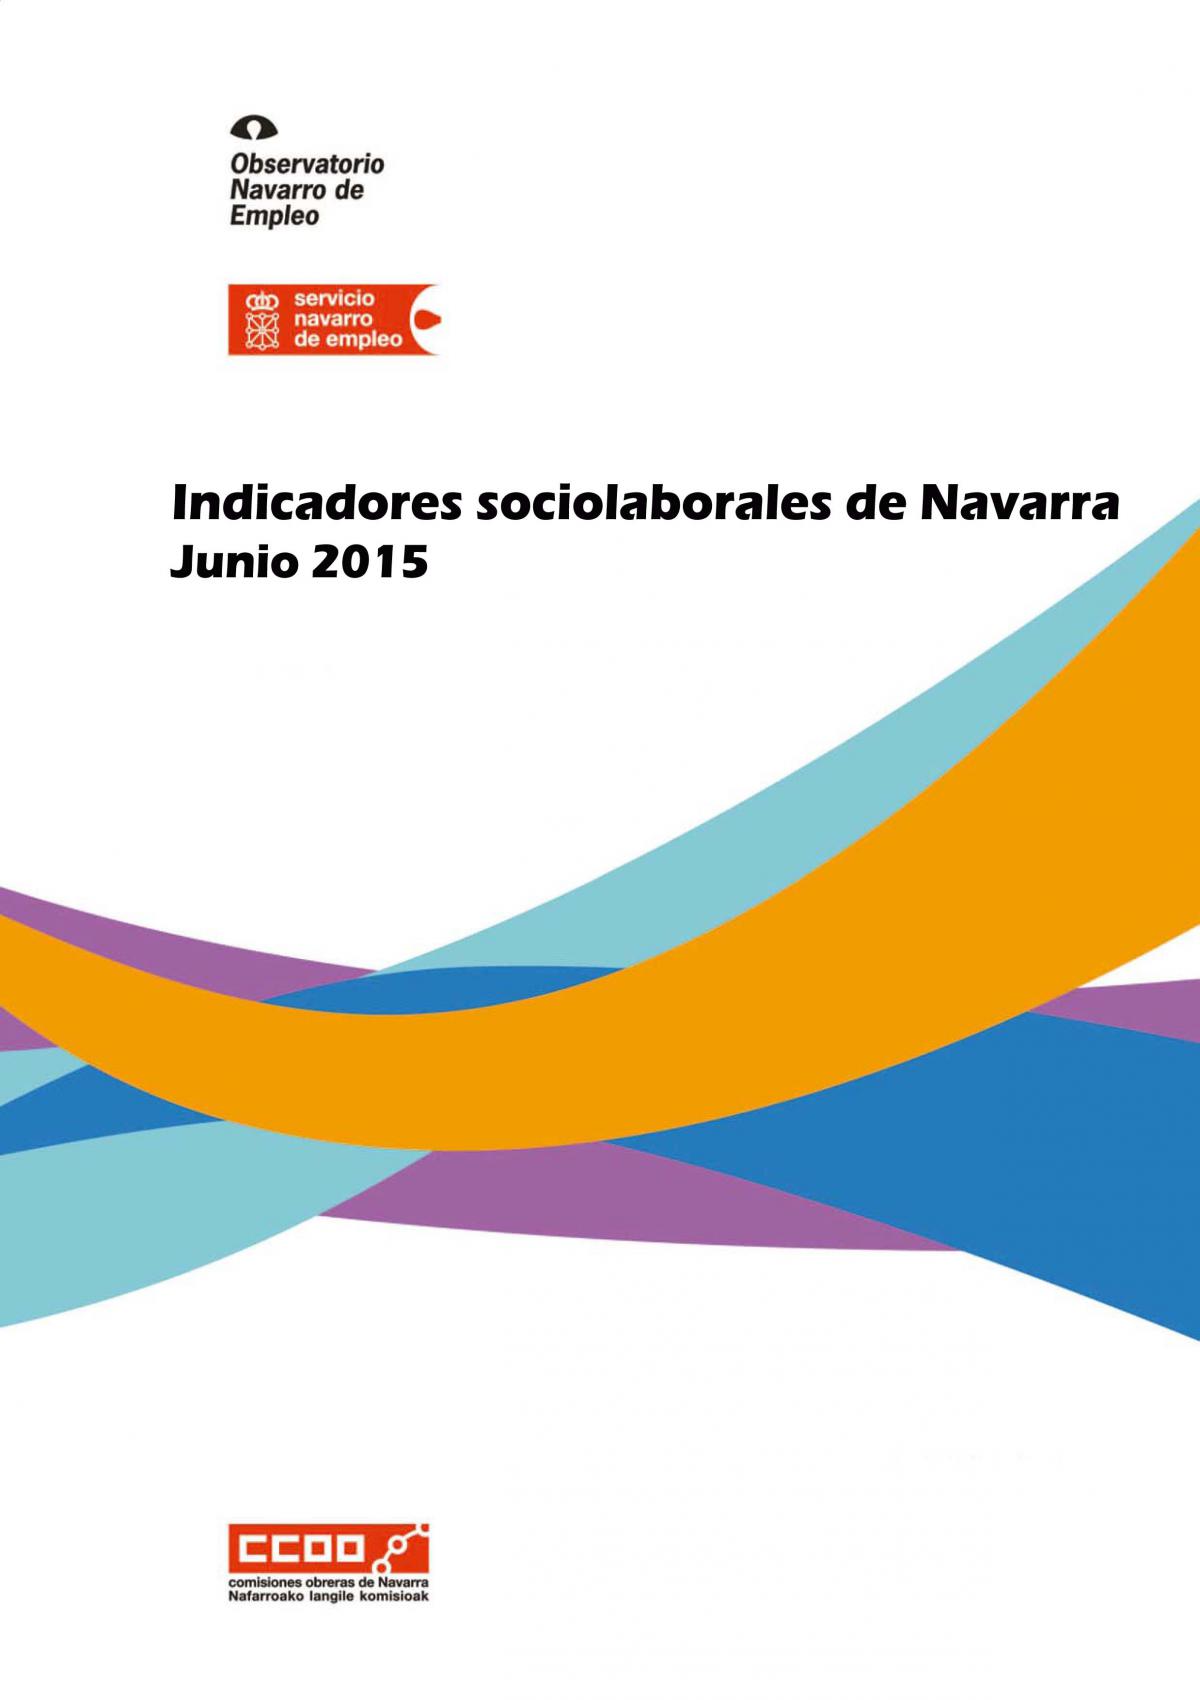 Indicadores sociolaborales de Navarra junio 2015